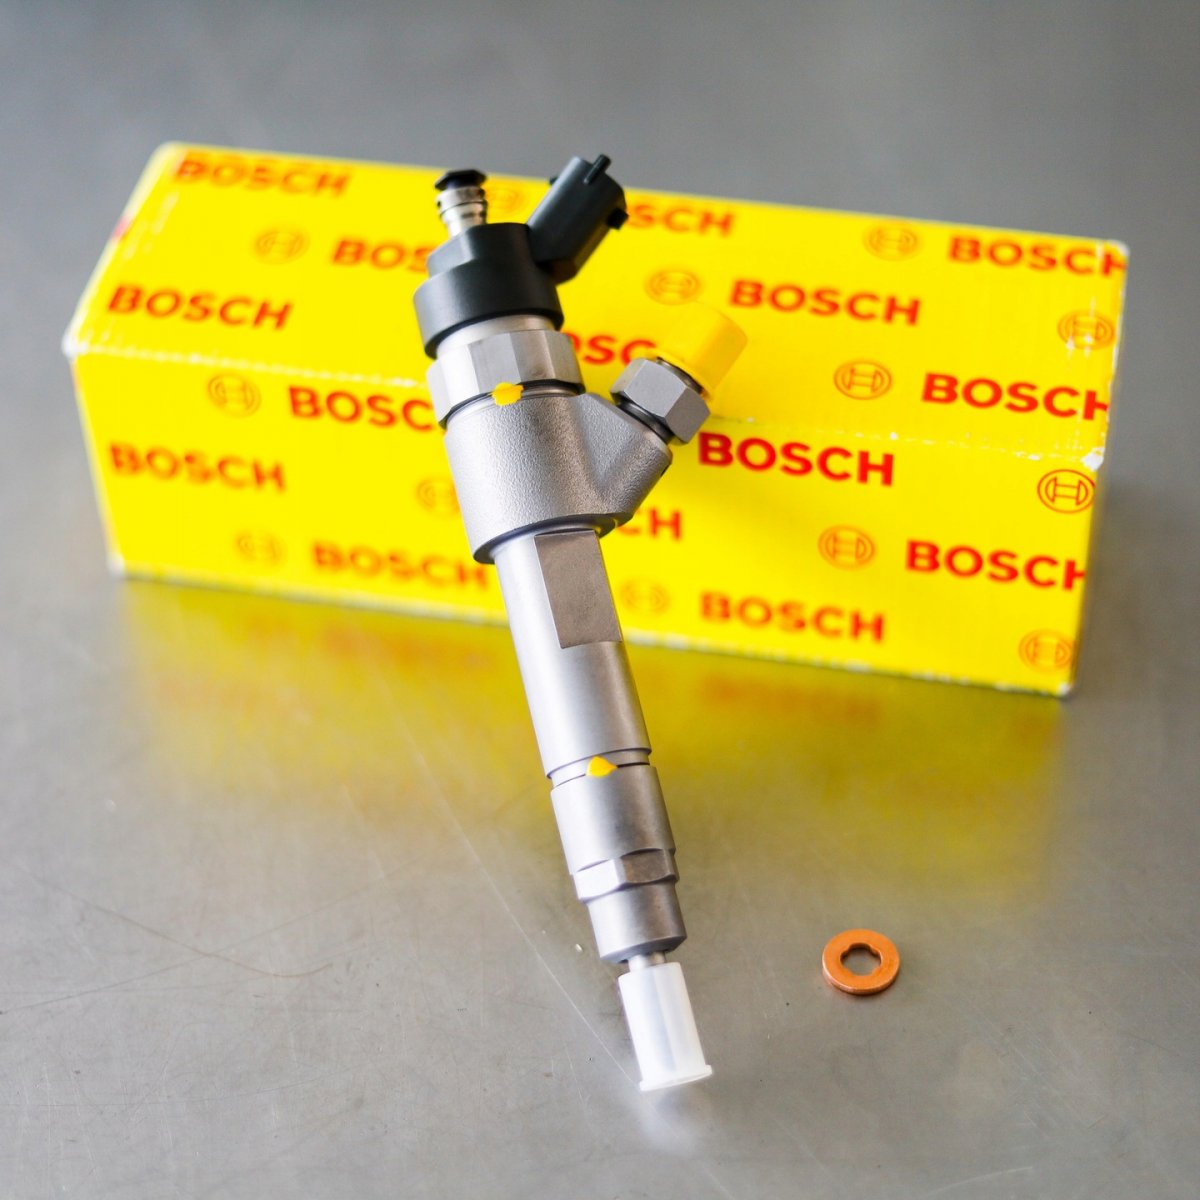 Wtryskiwacz Bosch zregenerowany gotowy do wysyłki do zamawiającego z gwarancją 24 miesiące w korzystnej cenie